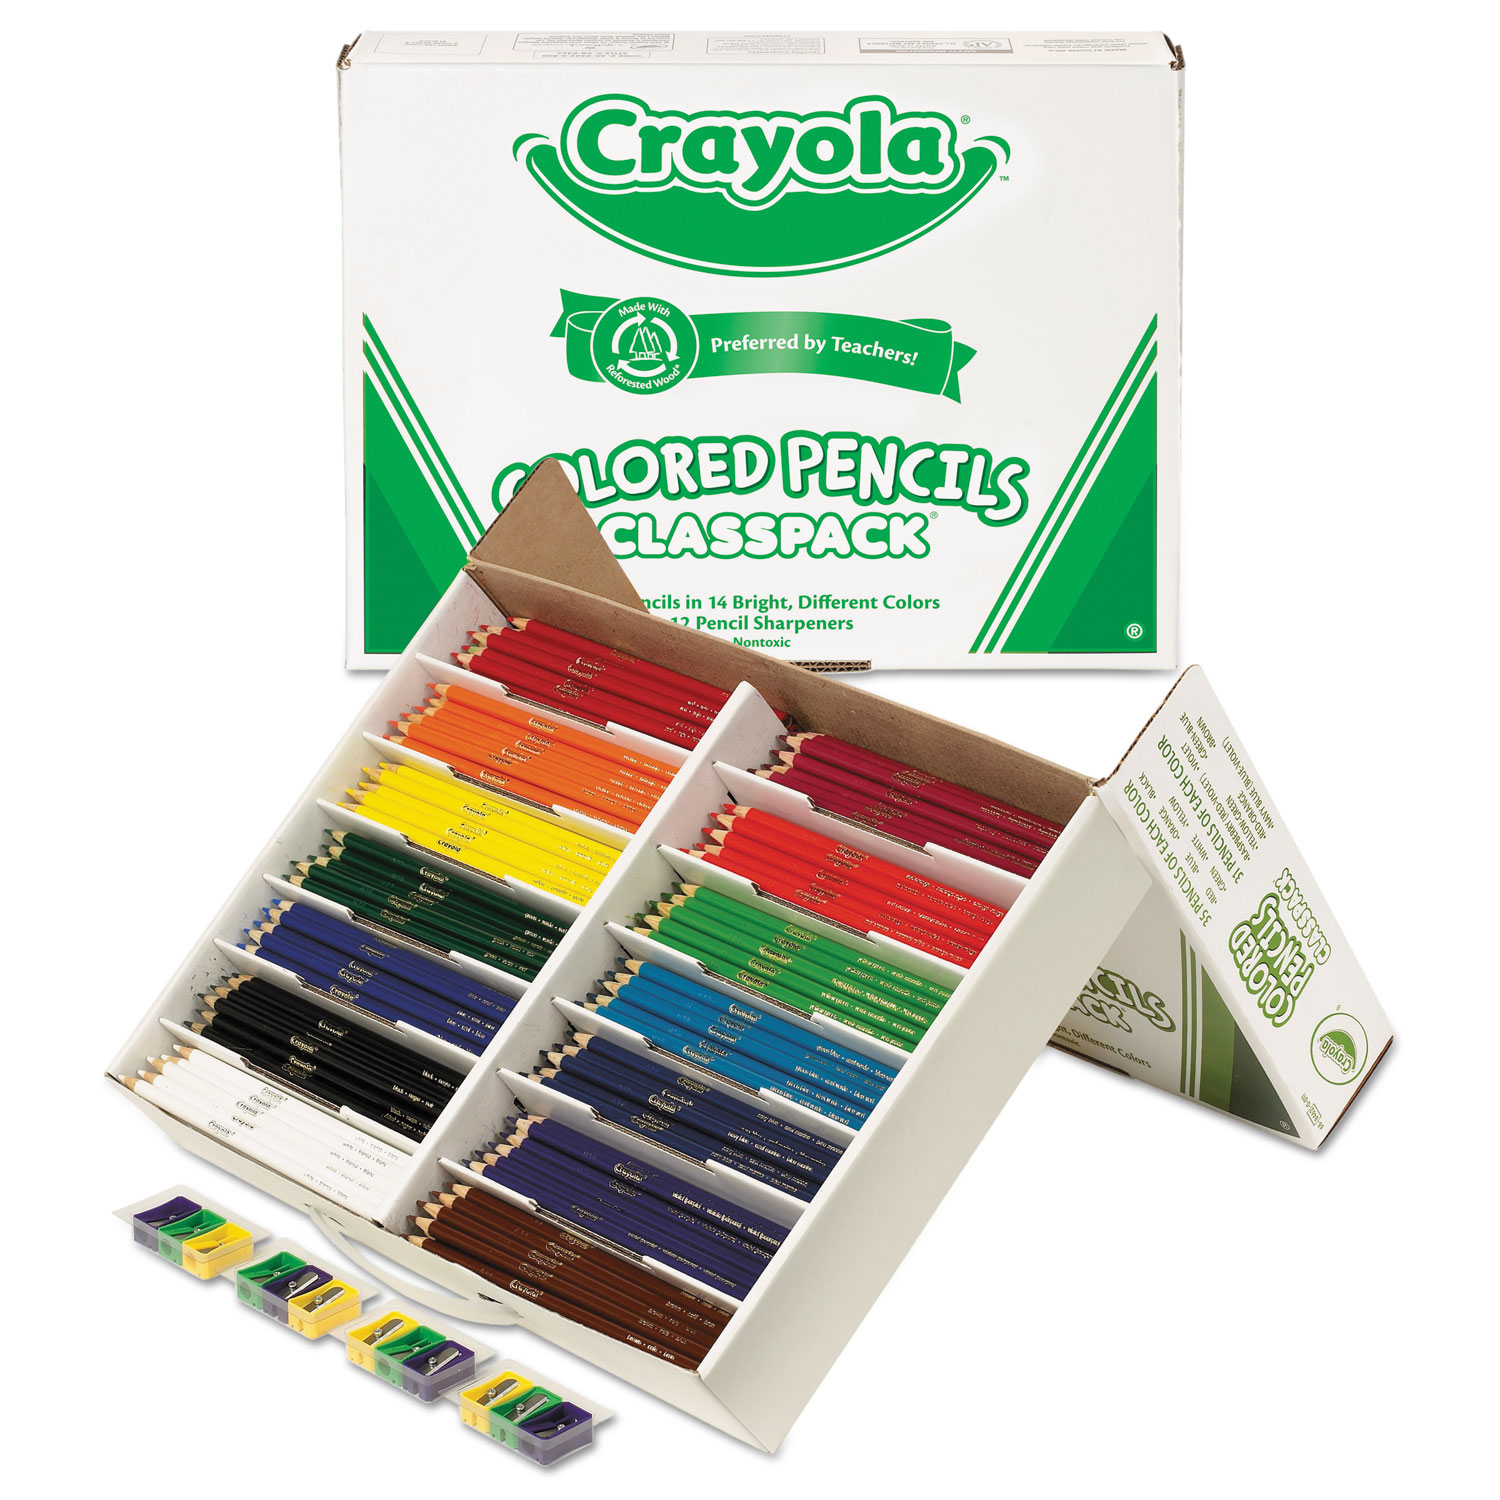  Crayola 688462 Color Pencil Classpack Set, 3.3 mm, 2B (#1), Assorted Lead/Barrel Colors, 462/Box (CYO688462) 